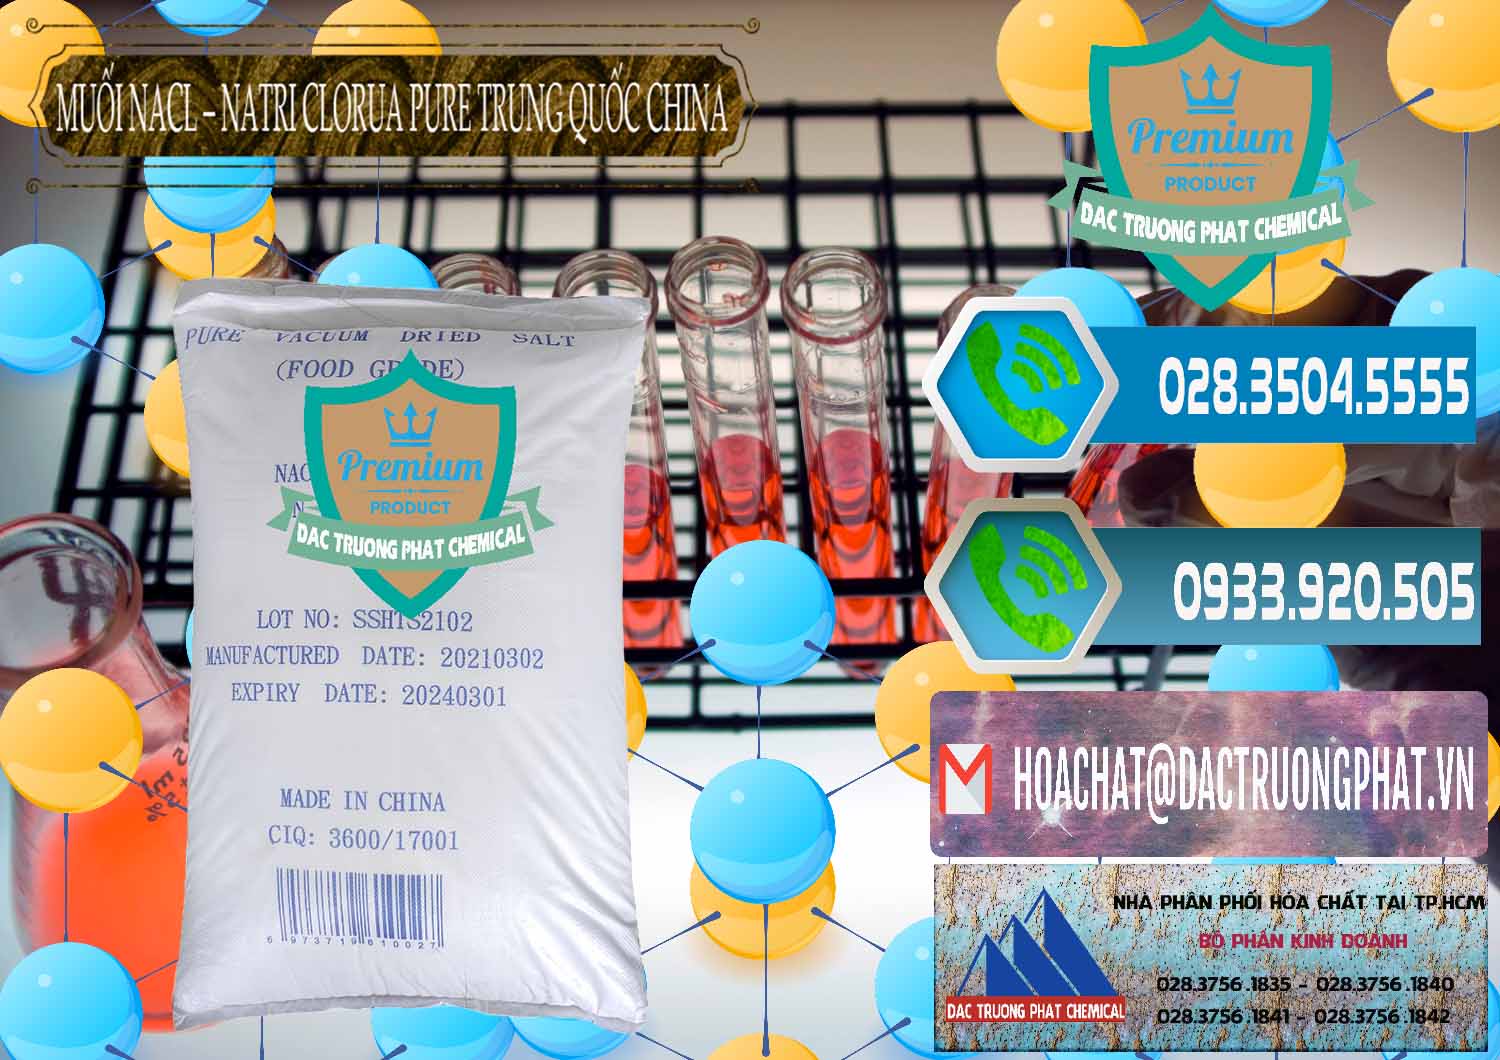 Nơi phân phối và bán Muối NaCL – Sodium Chloride Pure Trung Quốc China - 0230 - Chuyên cung cấp ( phân phối ) hóa chất tại TP.HCM - congtyhoachat.net